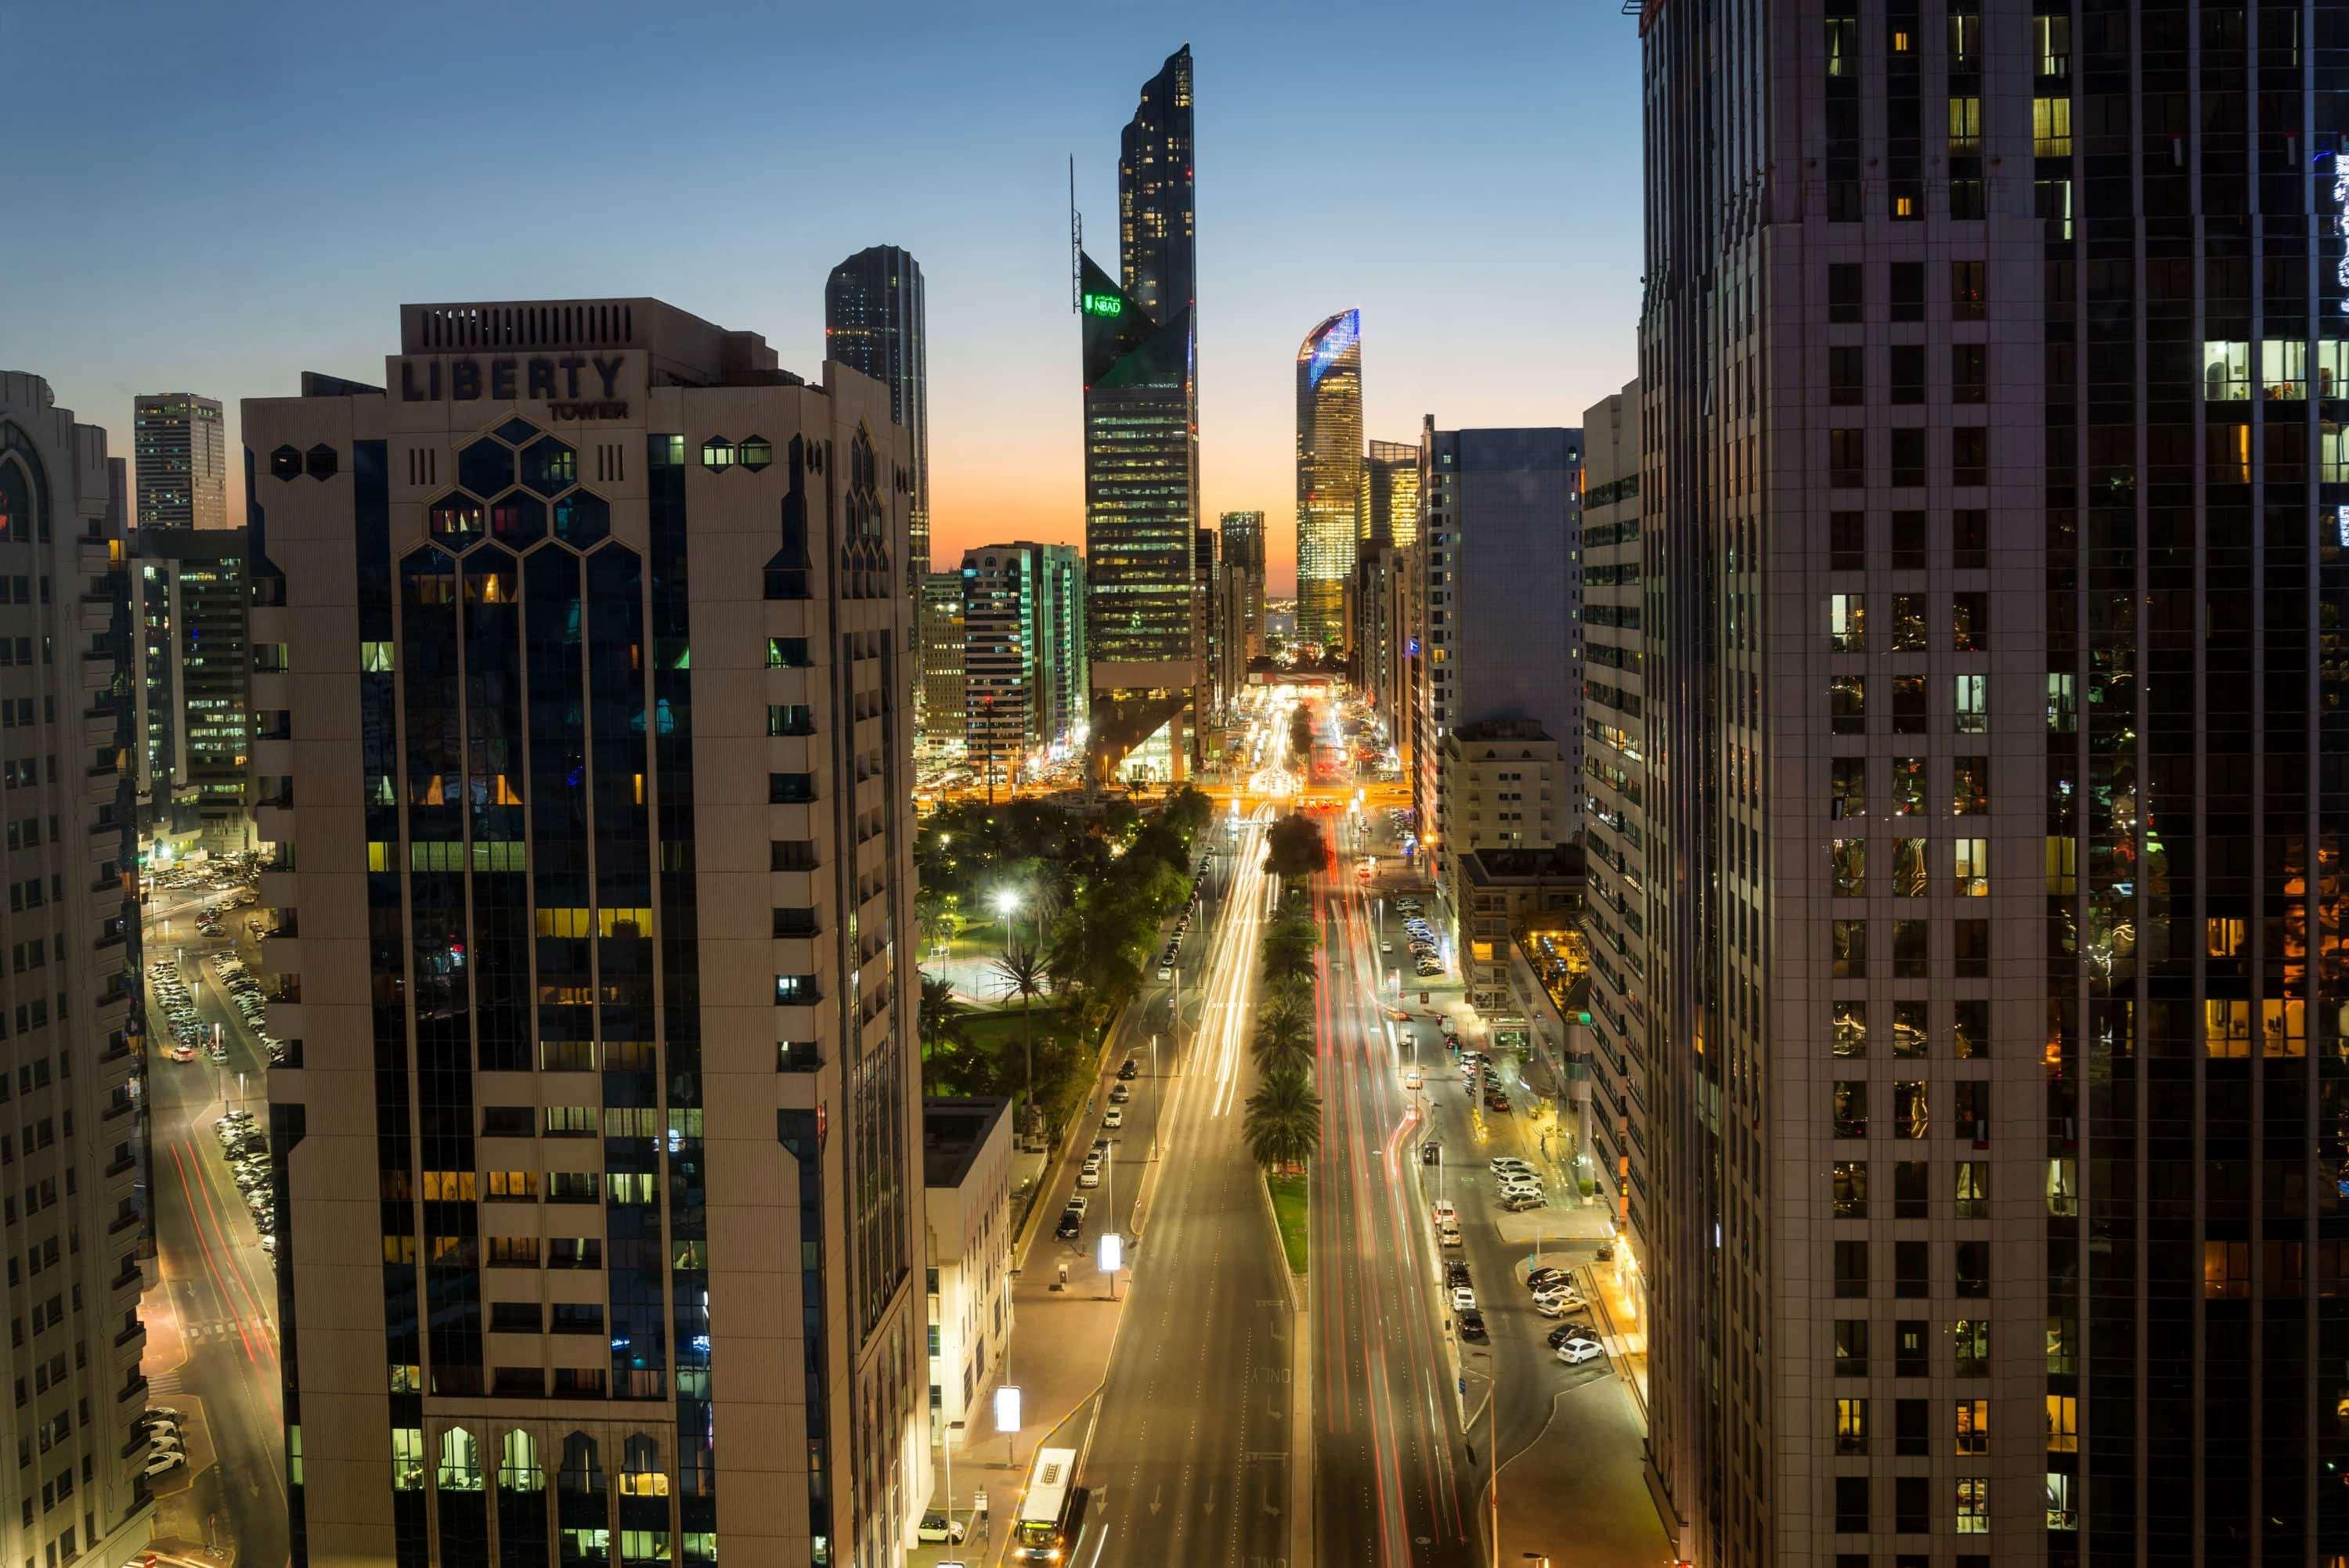 TRYP by Wyndham Abu Dhabi City Center